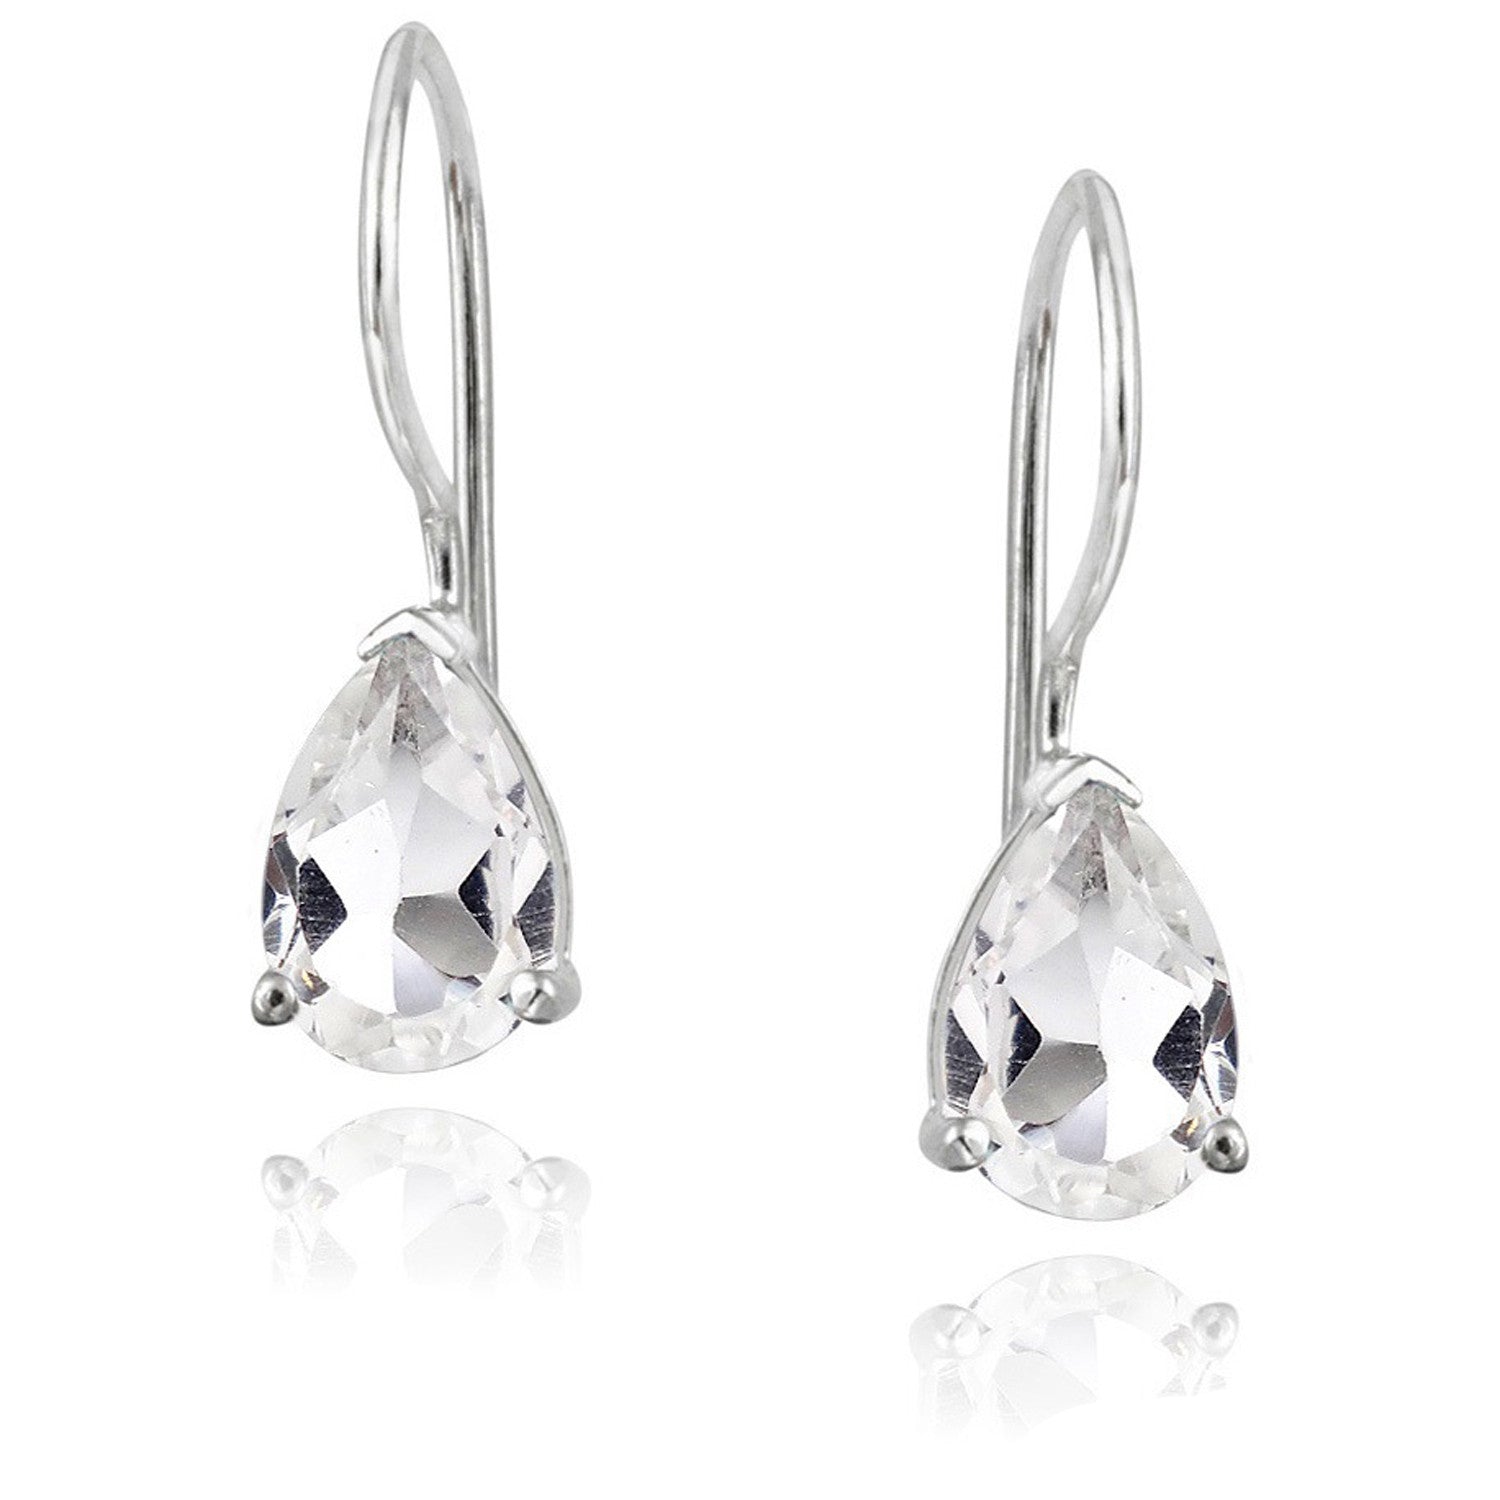 Gemstone Accent Sterling Silver Dangle Teardrop Earrings - Silver / White Topaz